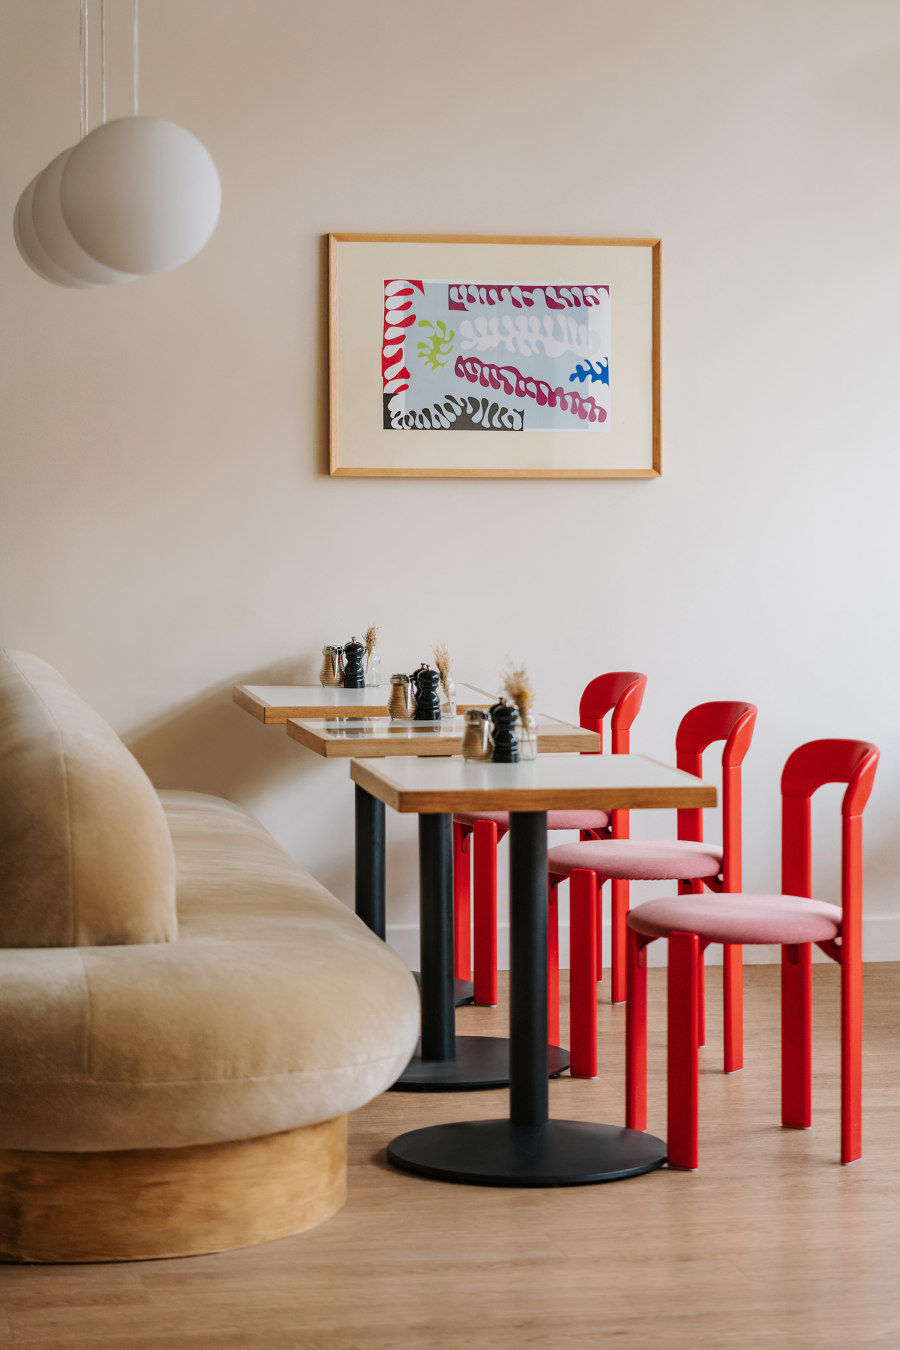 Beam Cafe by Ola Jachymiak Studio | Café interiors